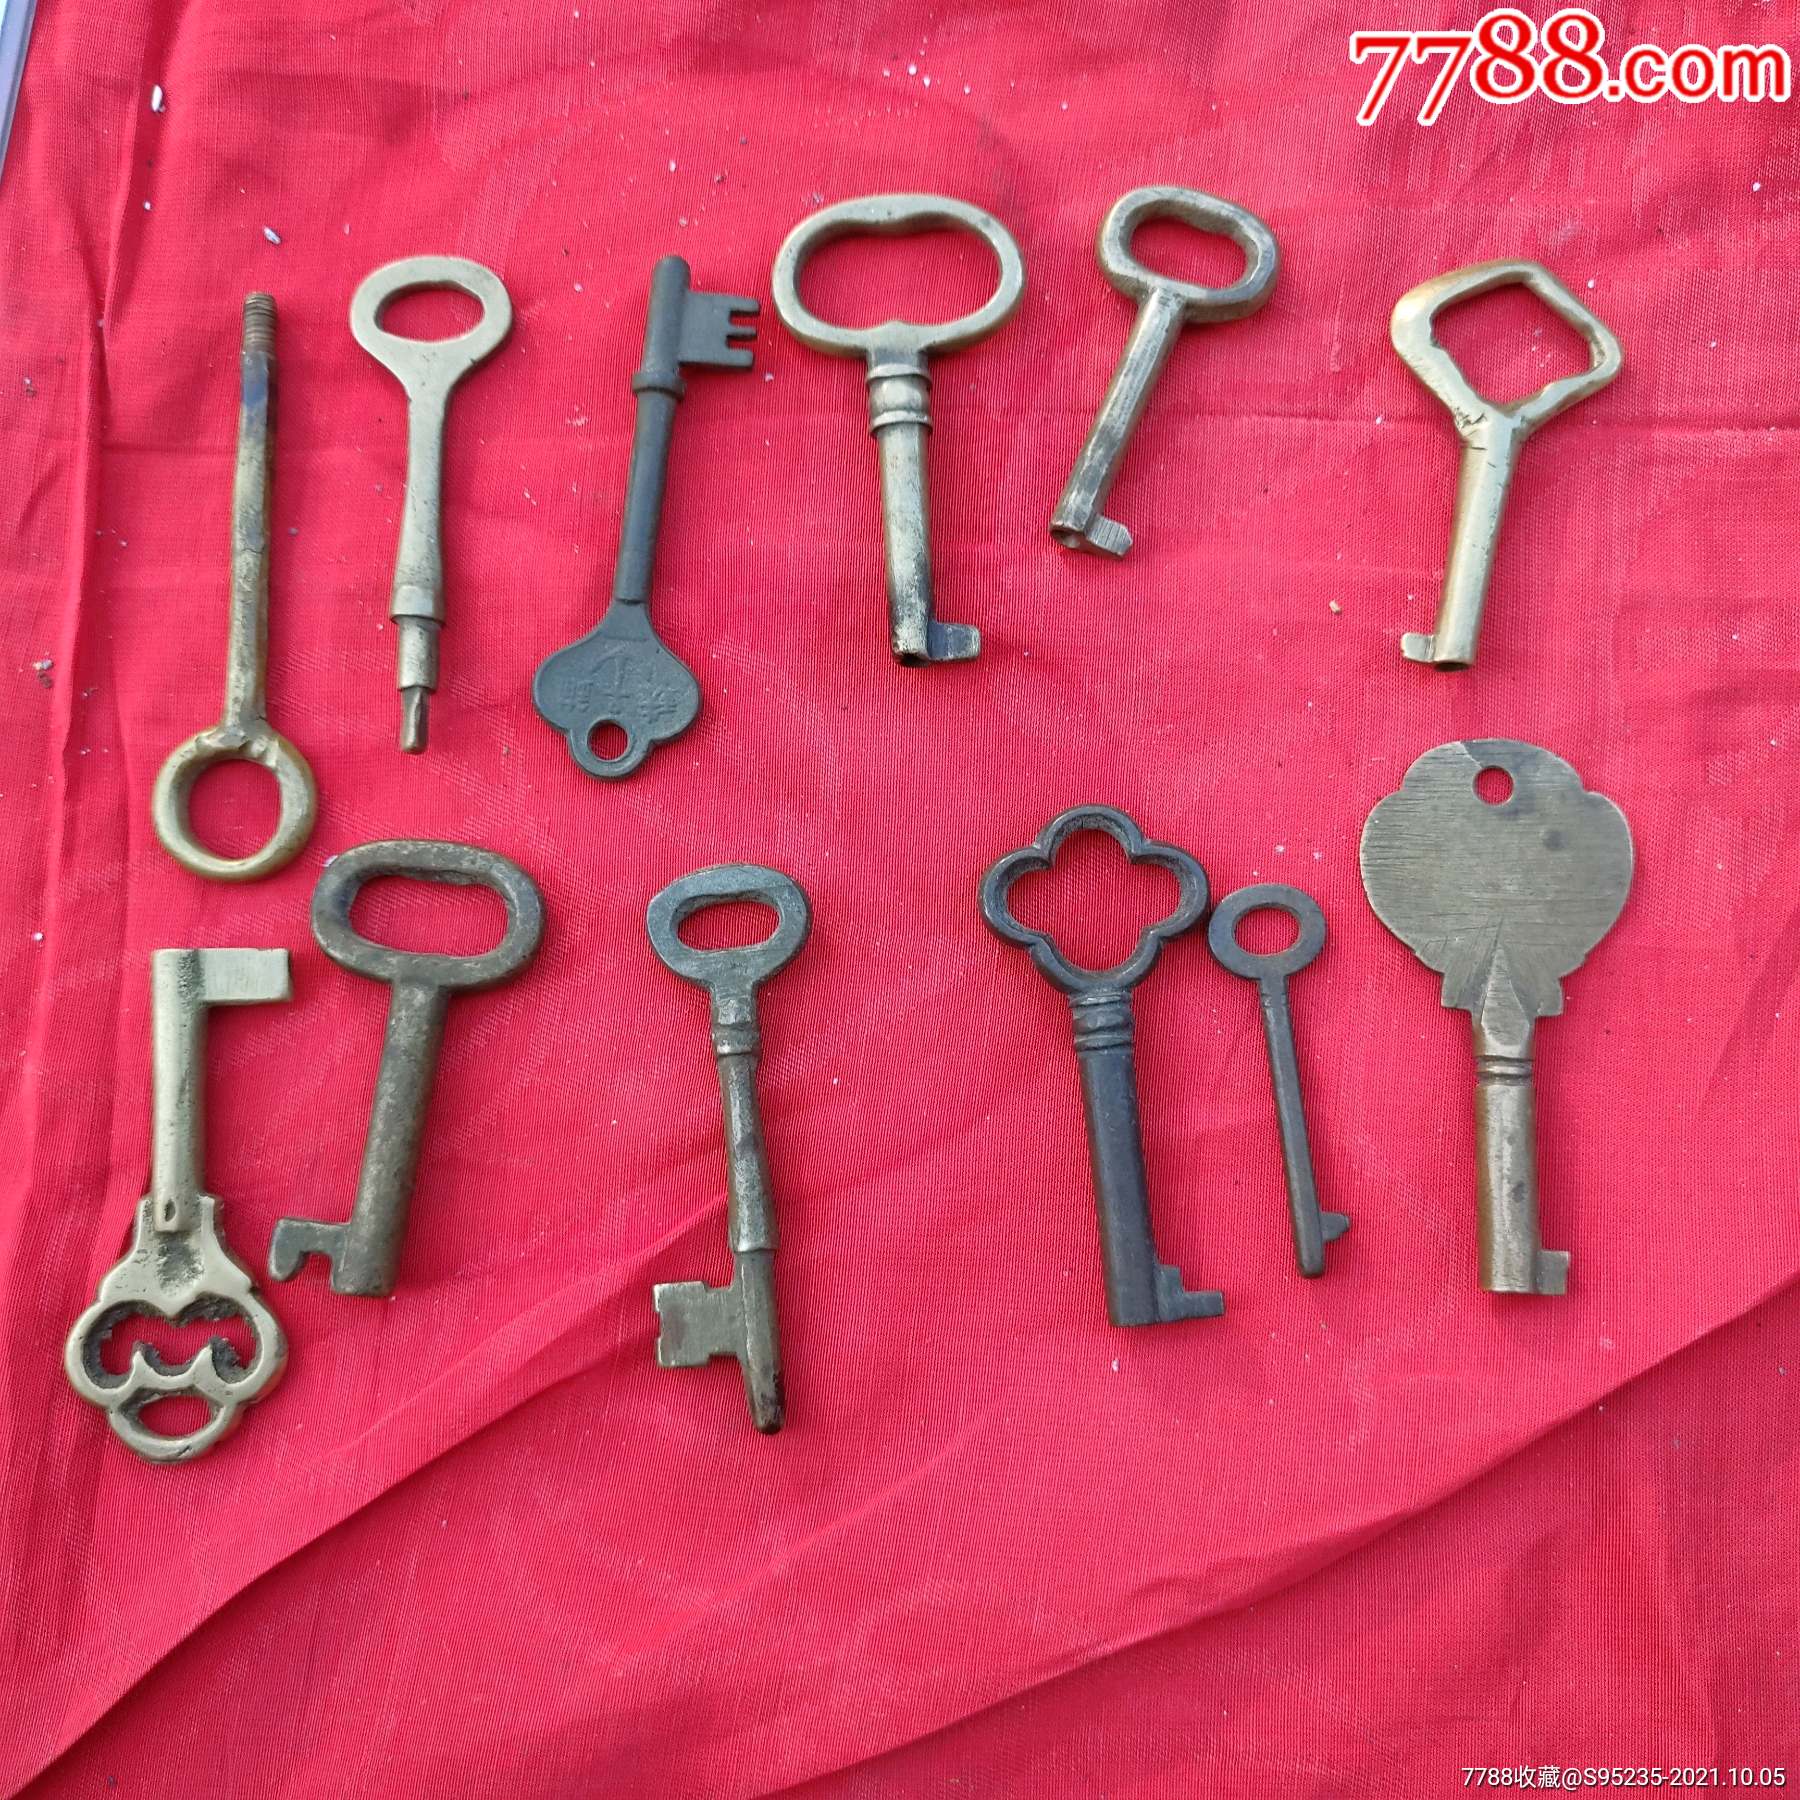 12把各异漂亮的古代铜钥匙